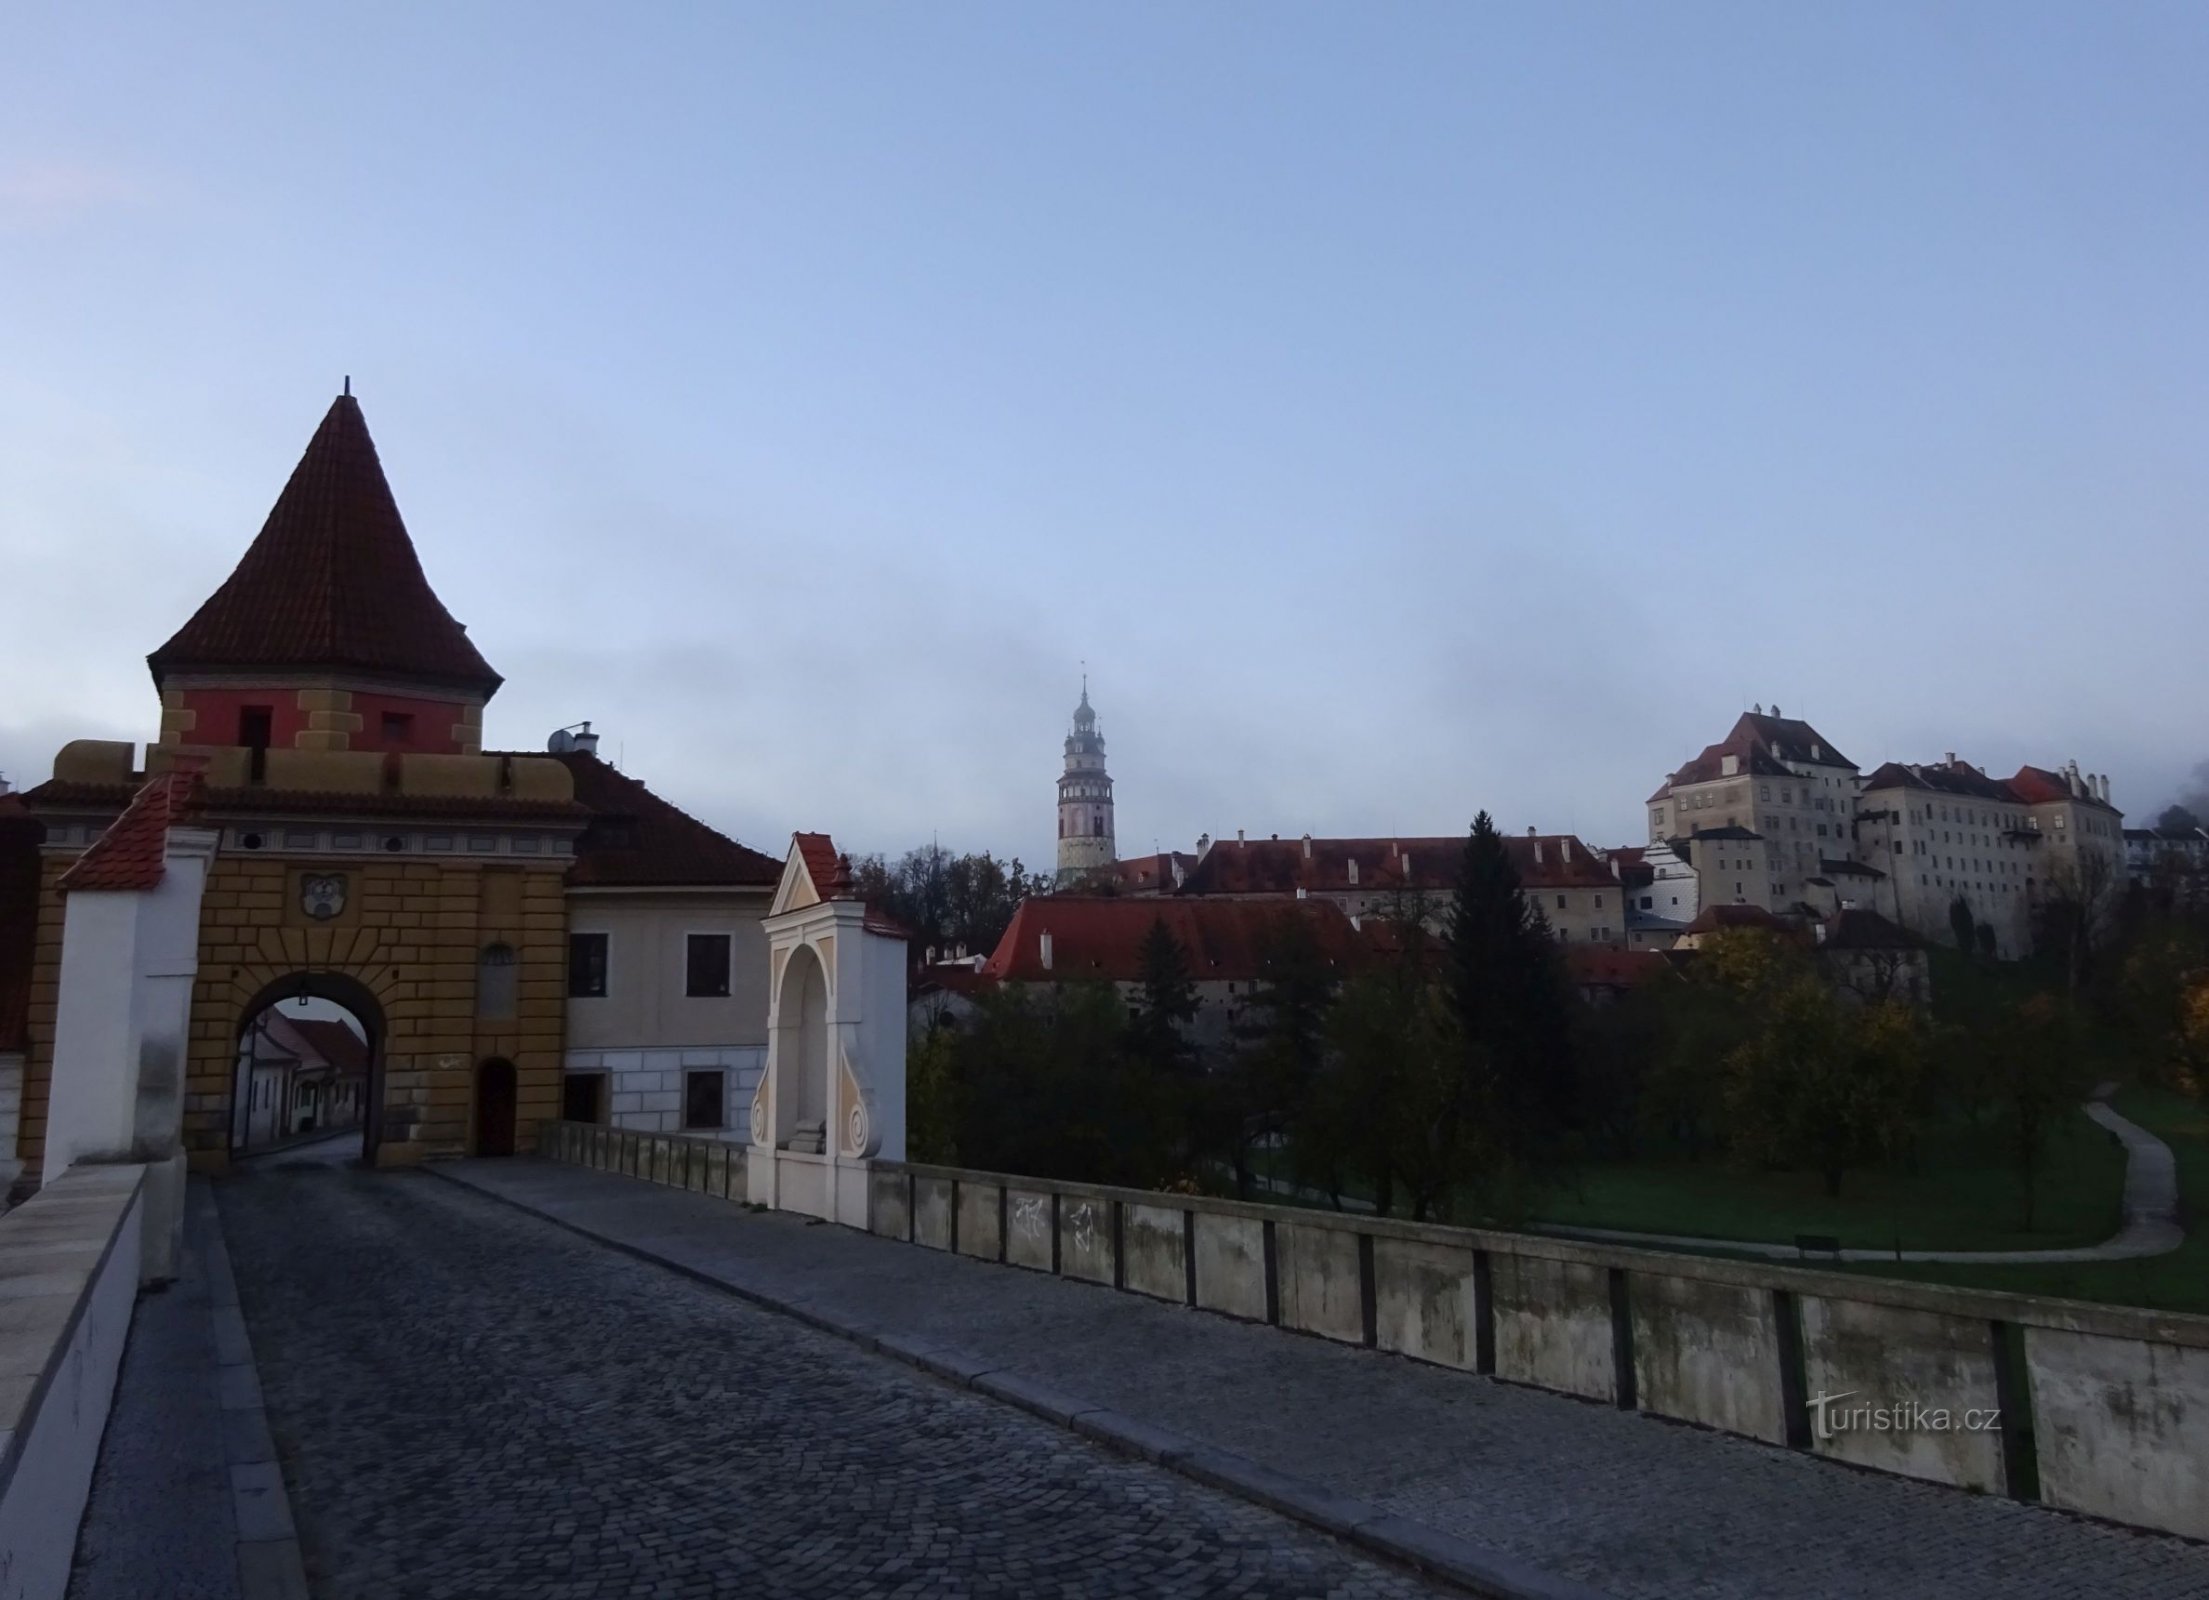 Český Krumlov and Domažlická gate